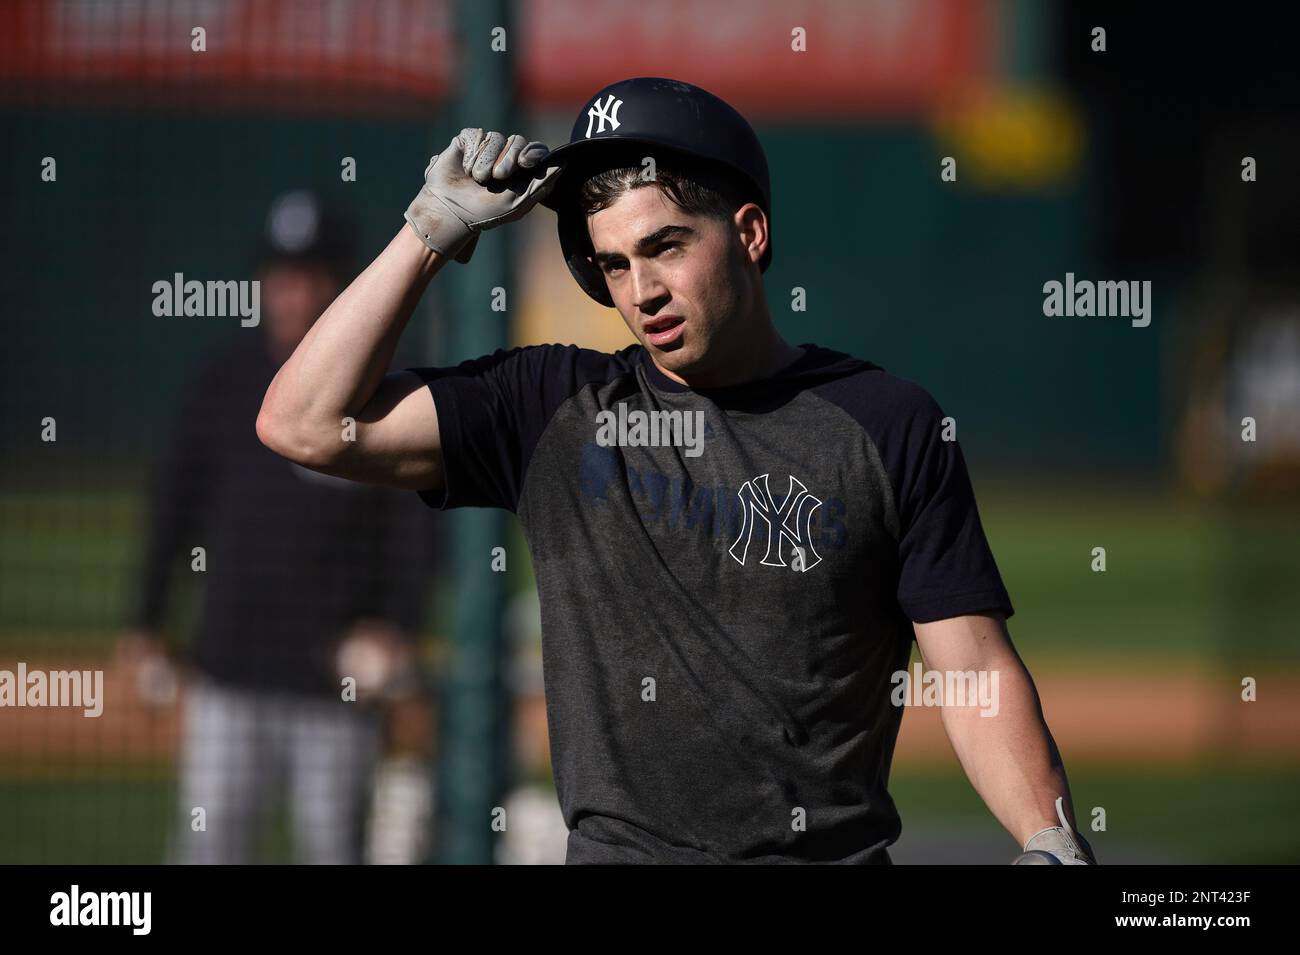 OAKLAND, CA - AUGUST 22: New York Yankees infielder Tyler Wade (14